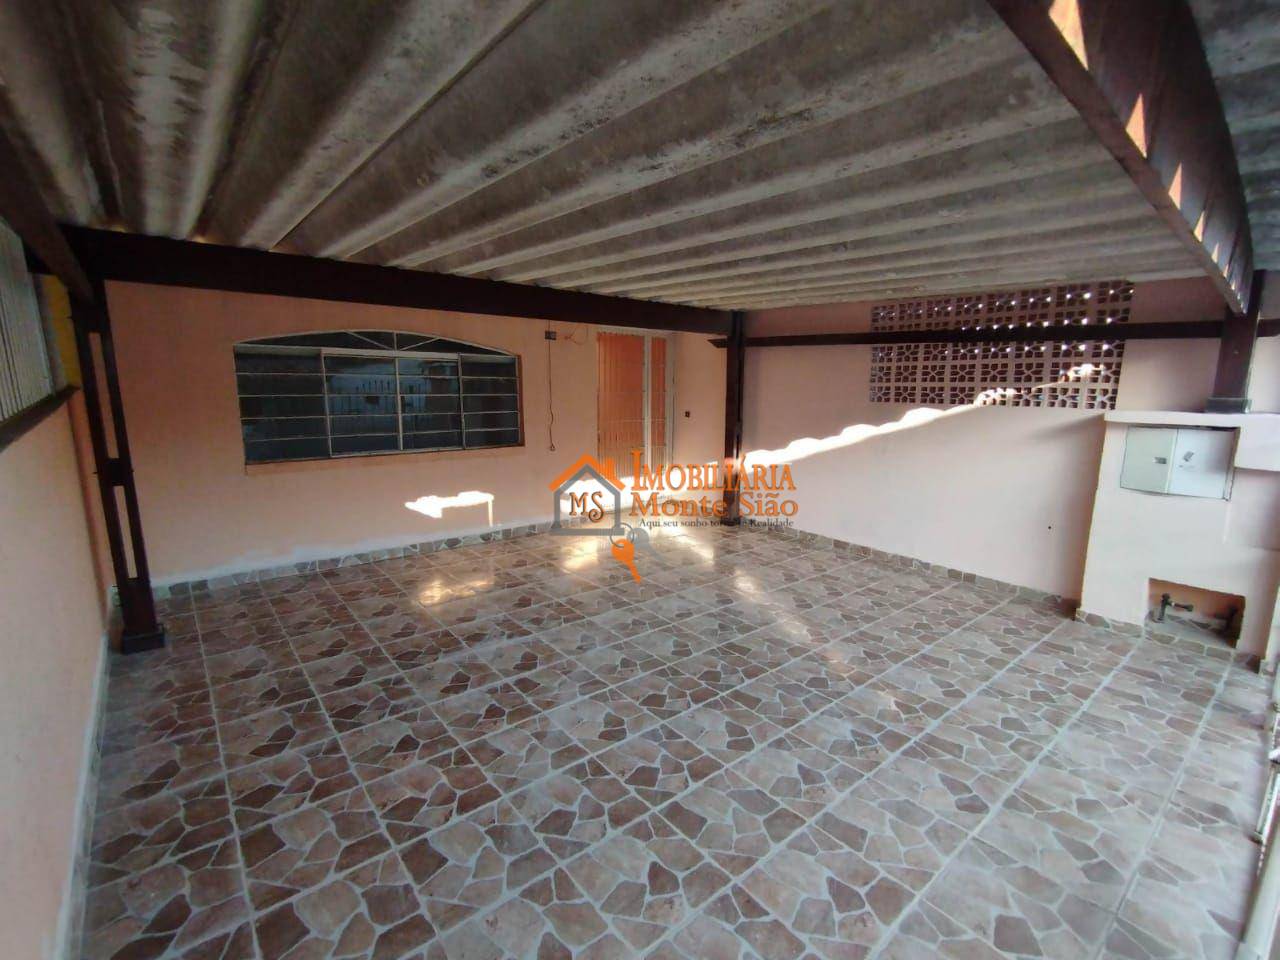 Sobrado com 2 dormitórios à venda, 154 m² por R$ 585.000,00 - Vila Barros - Guarulhos/SP